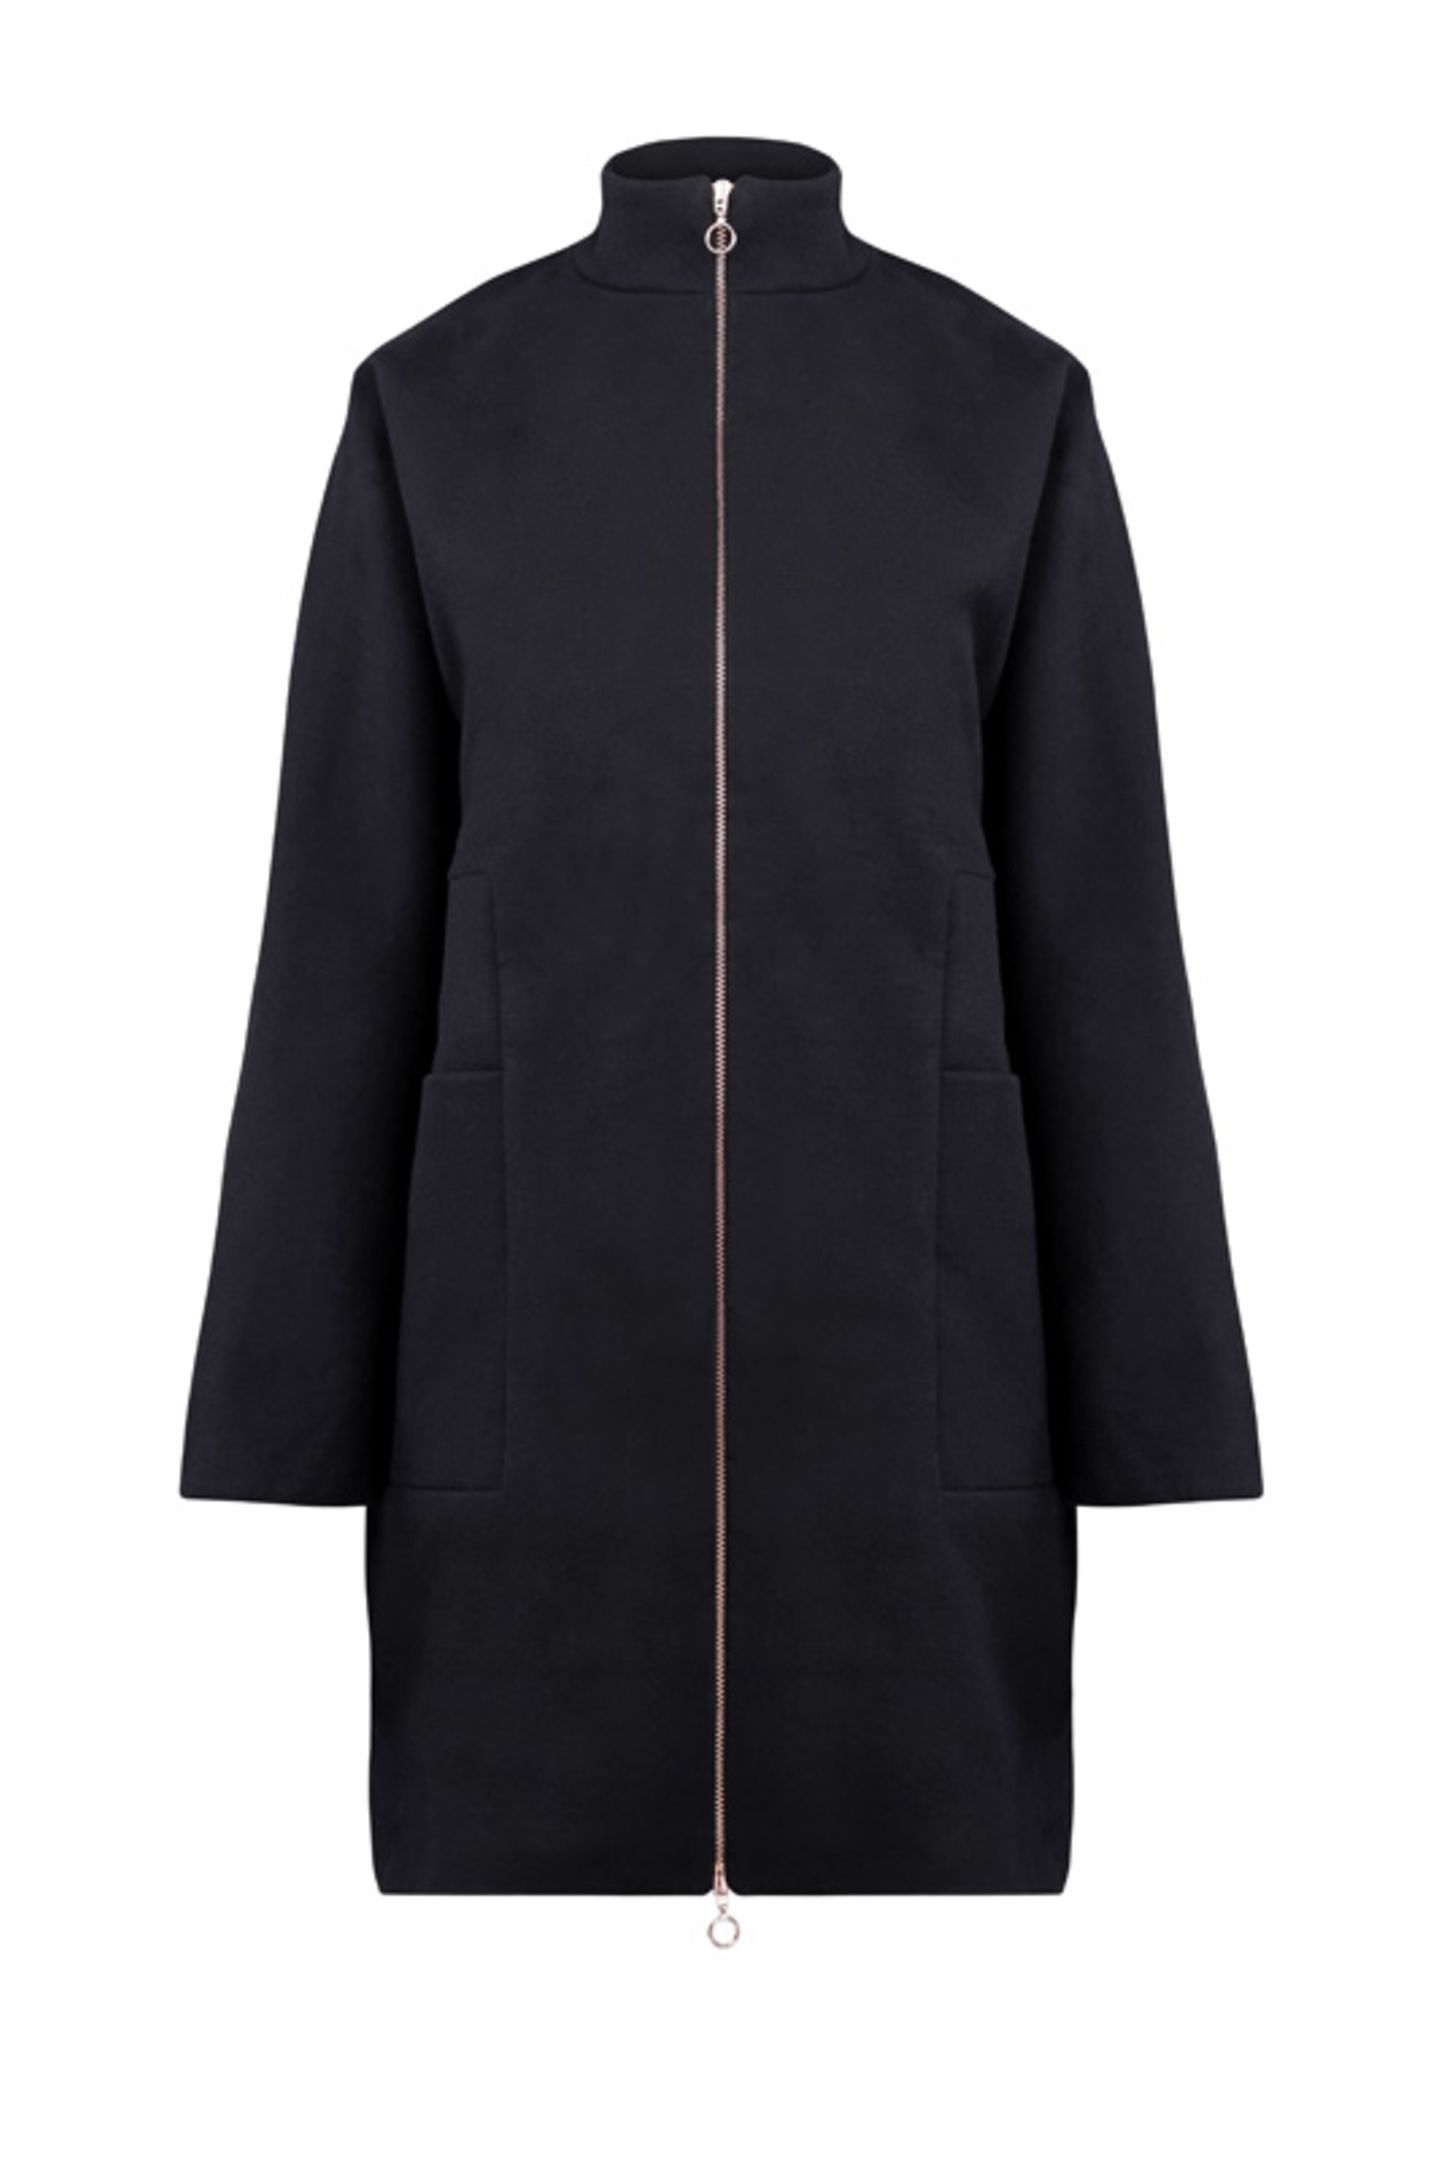 Schwarzer Mantel aus Bio-Baumwolle und recyceltem Polyester mit langem Zipper, 240 Euro.